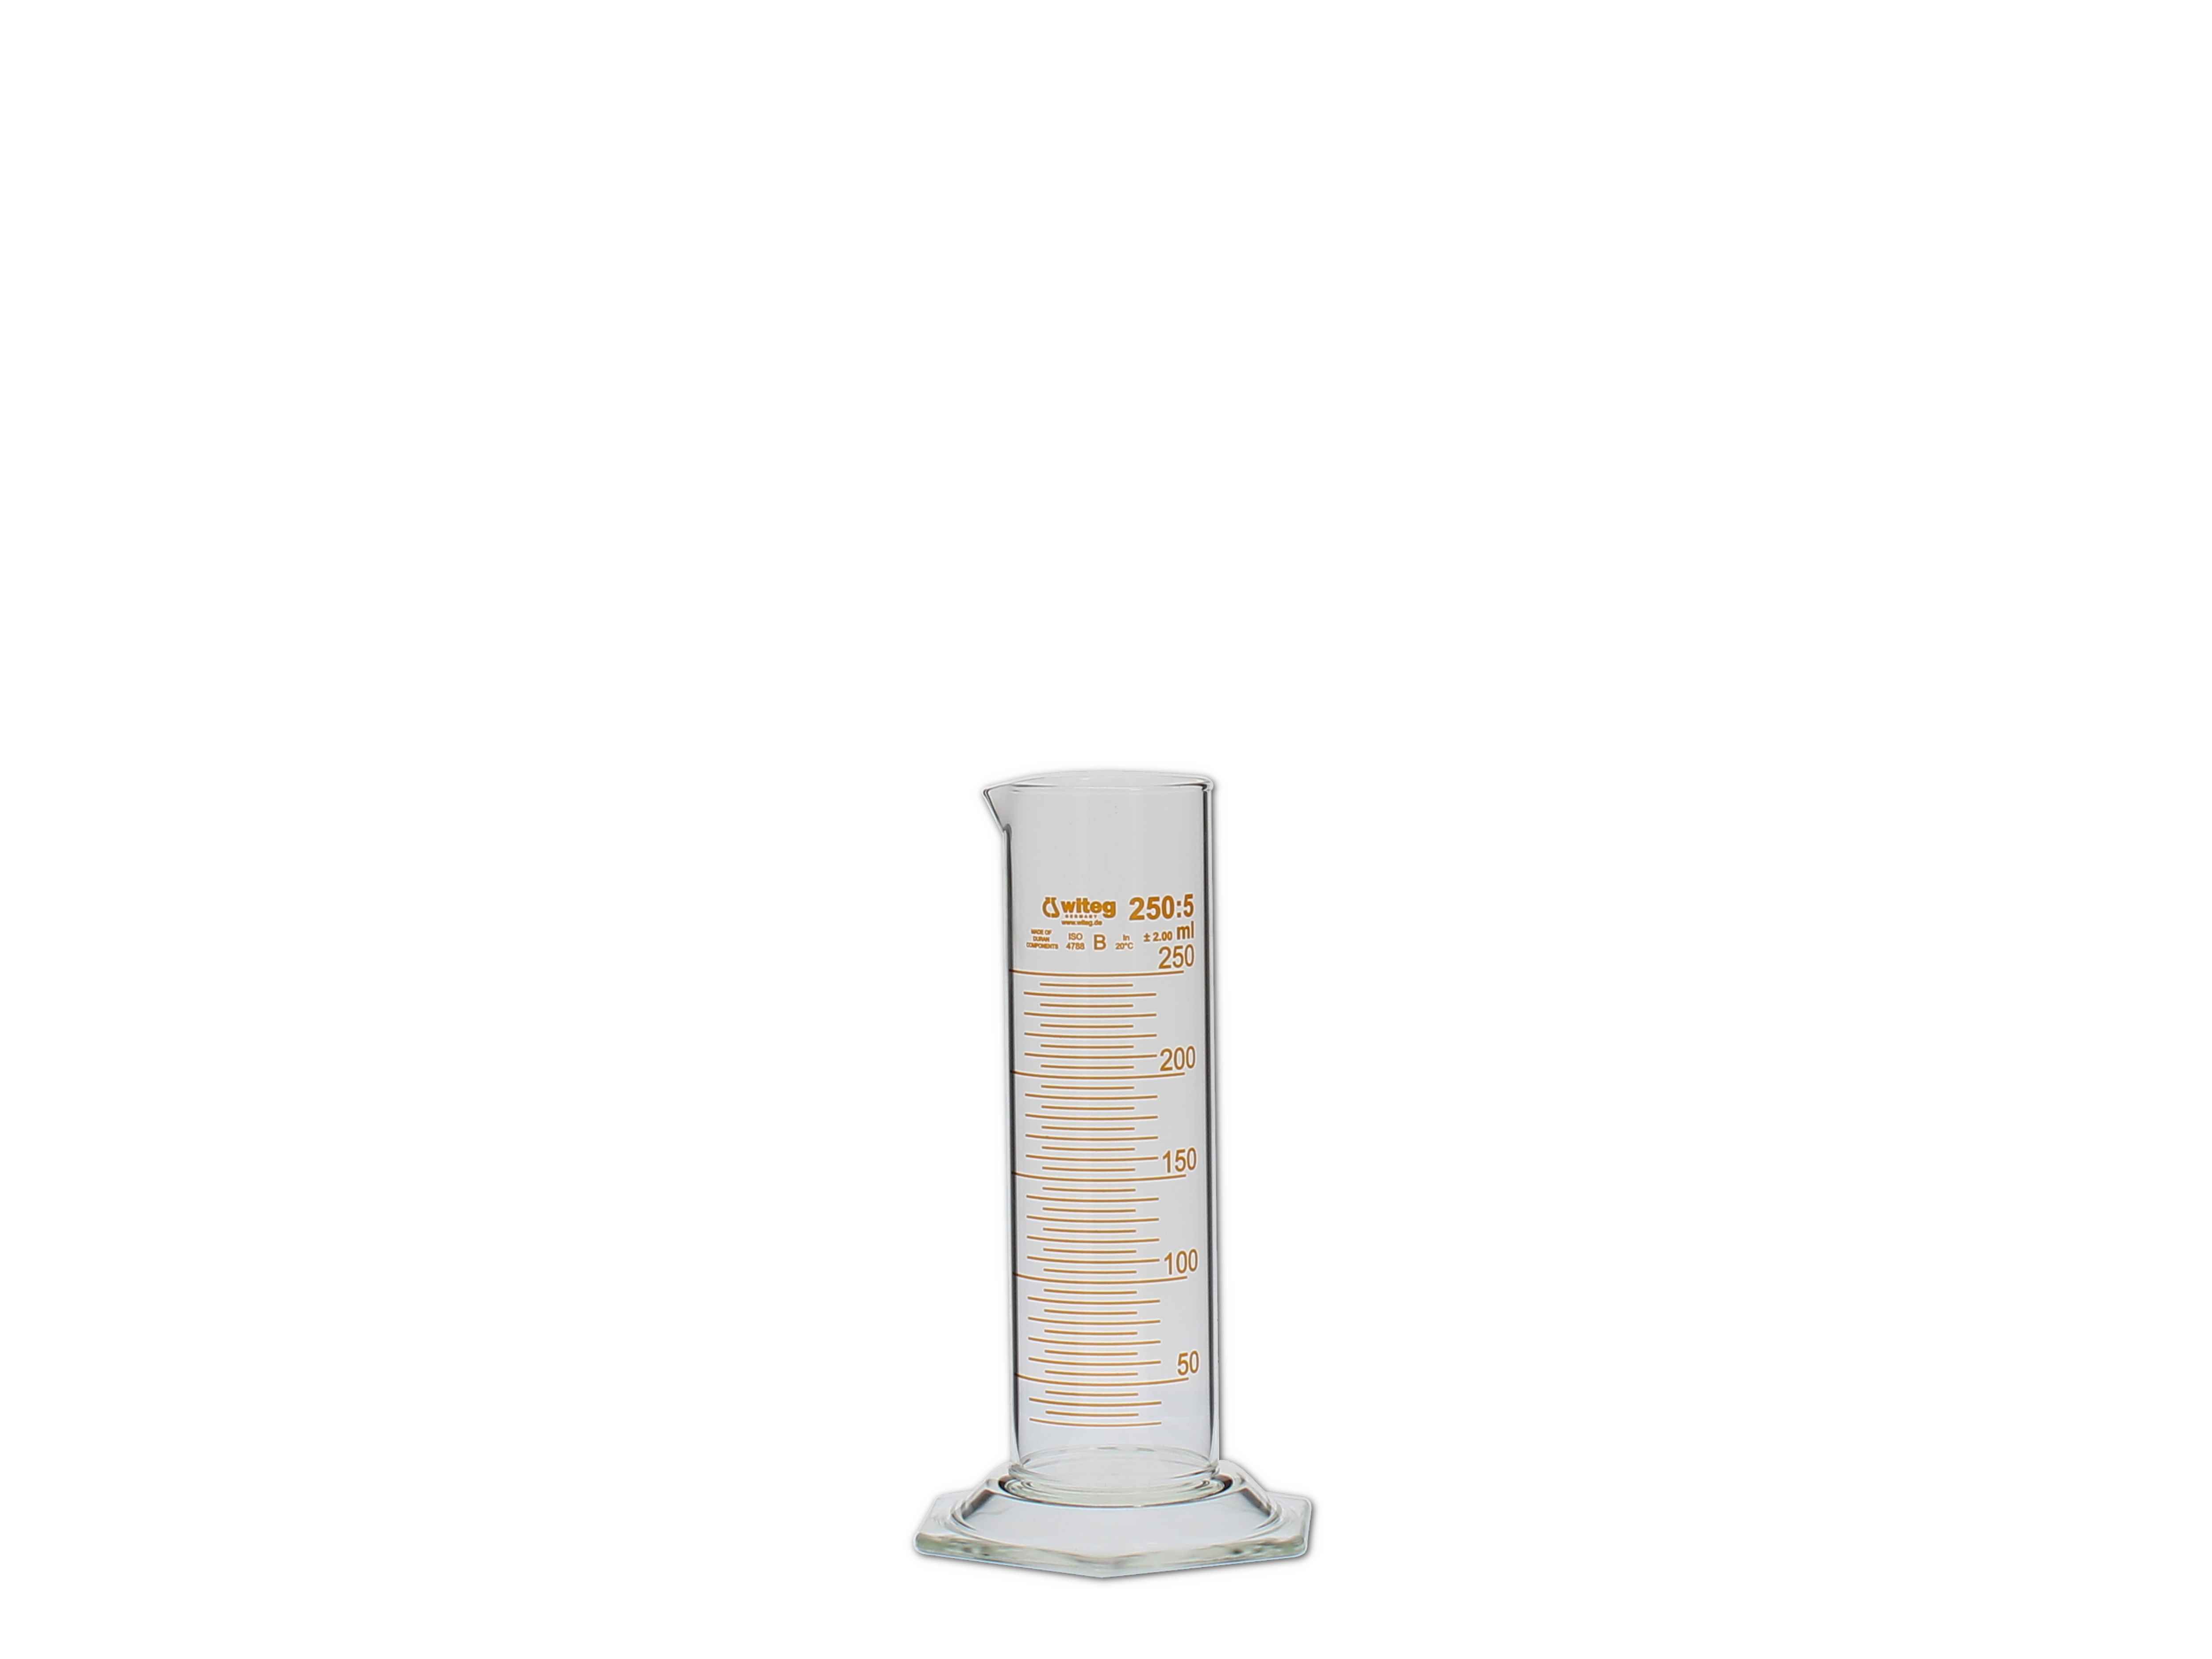    Messzylinder, Glas, graduiert - 250ml (niedere Form)